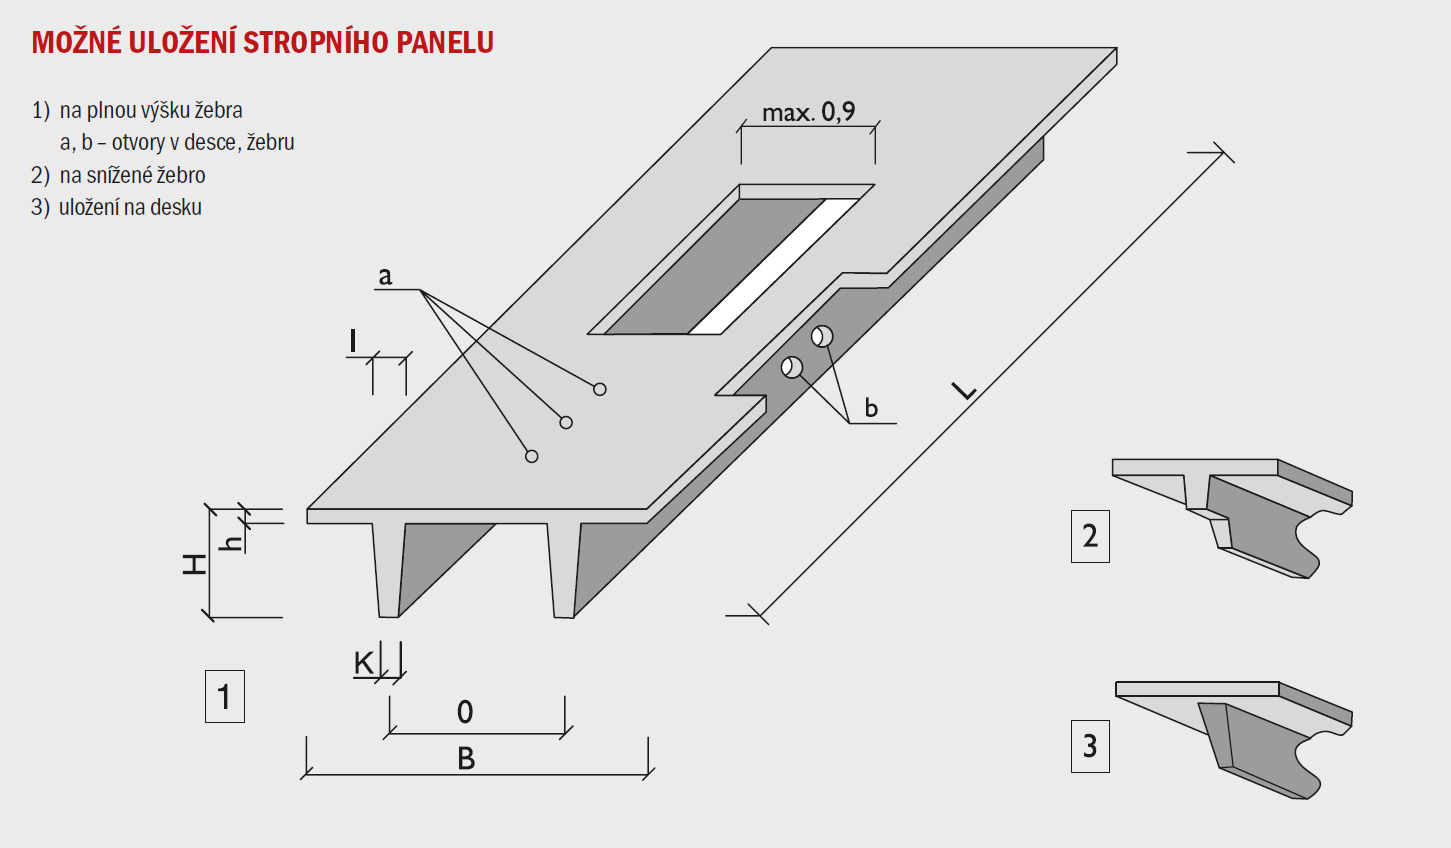 Prefabrikované železobetonové stropní konstrukce z předpjatých žebrových panelů VCES a.s. - délka max. 9,5 m (h=440 mm), max.